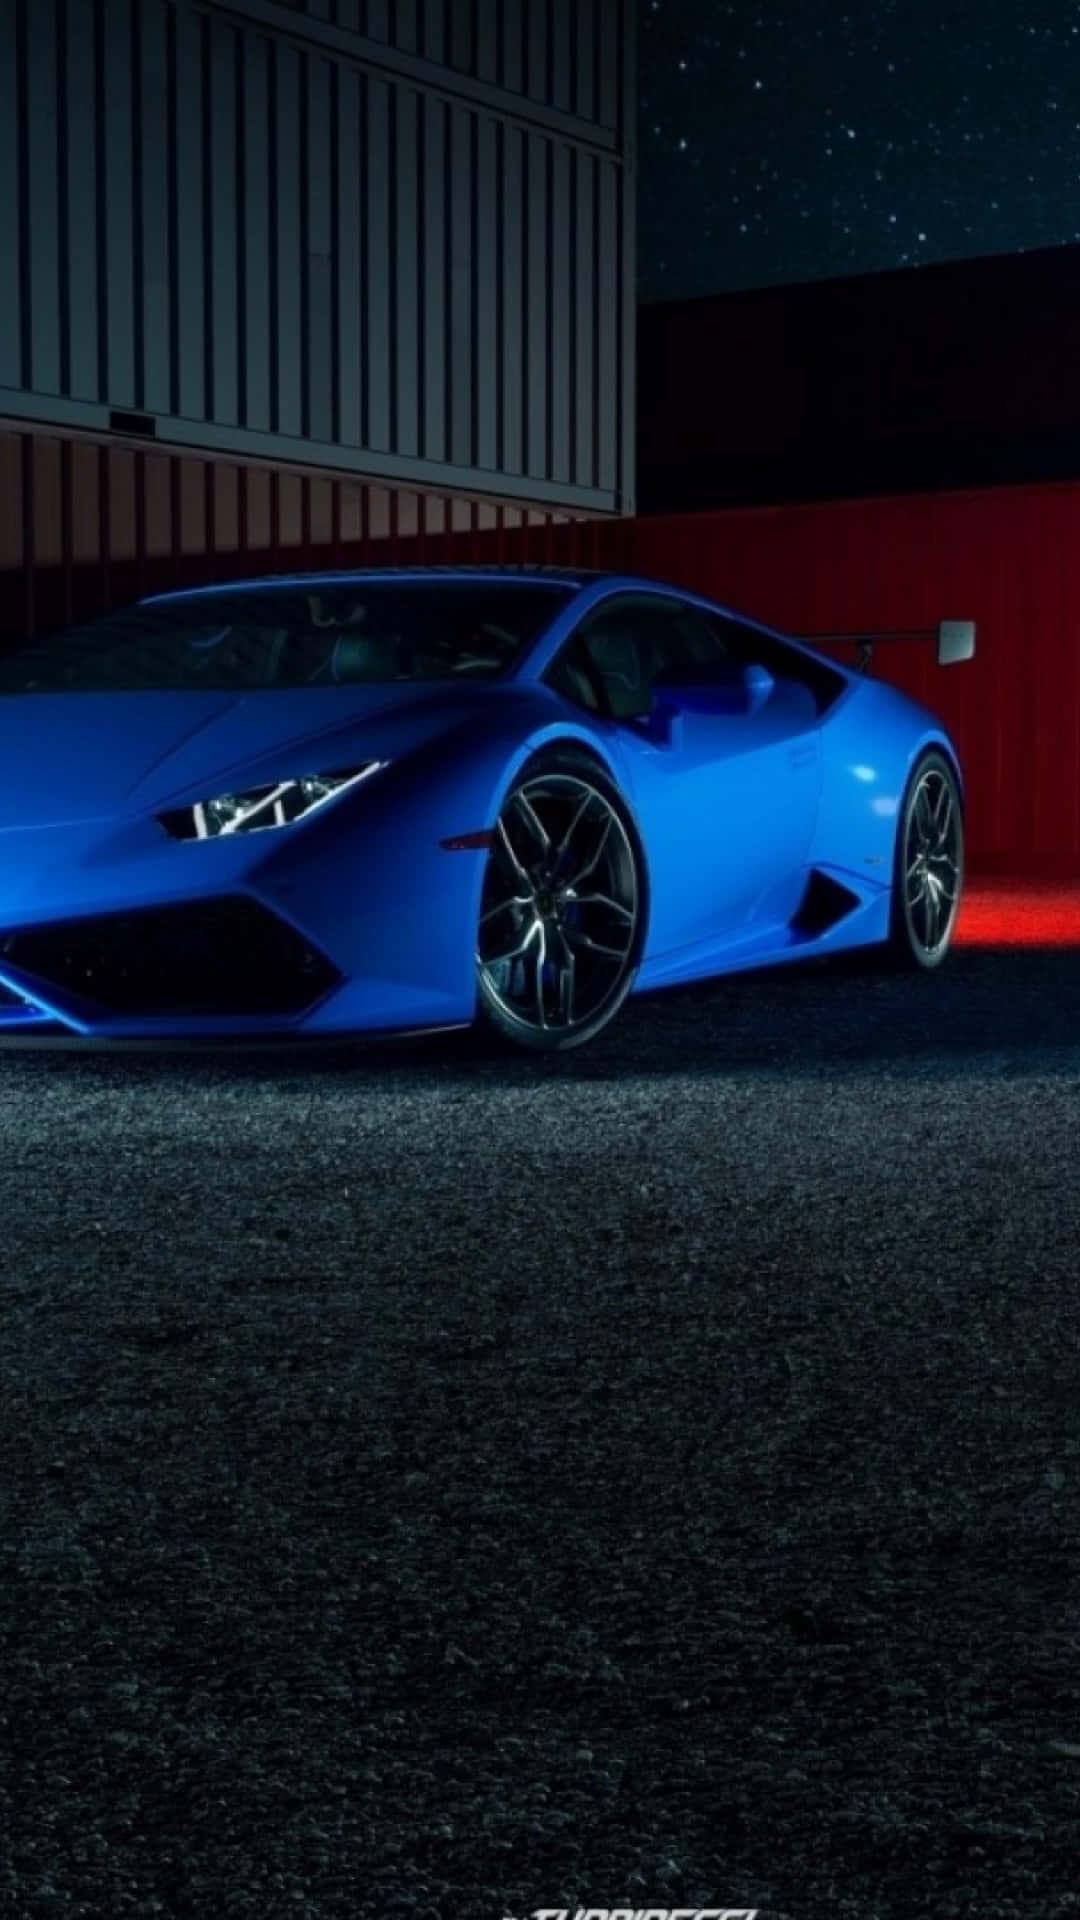 Dare to be different with a brilliant blue Lamborghini iPhone Wallpaper